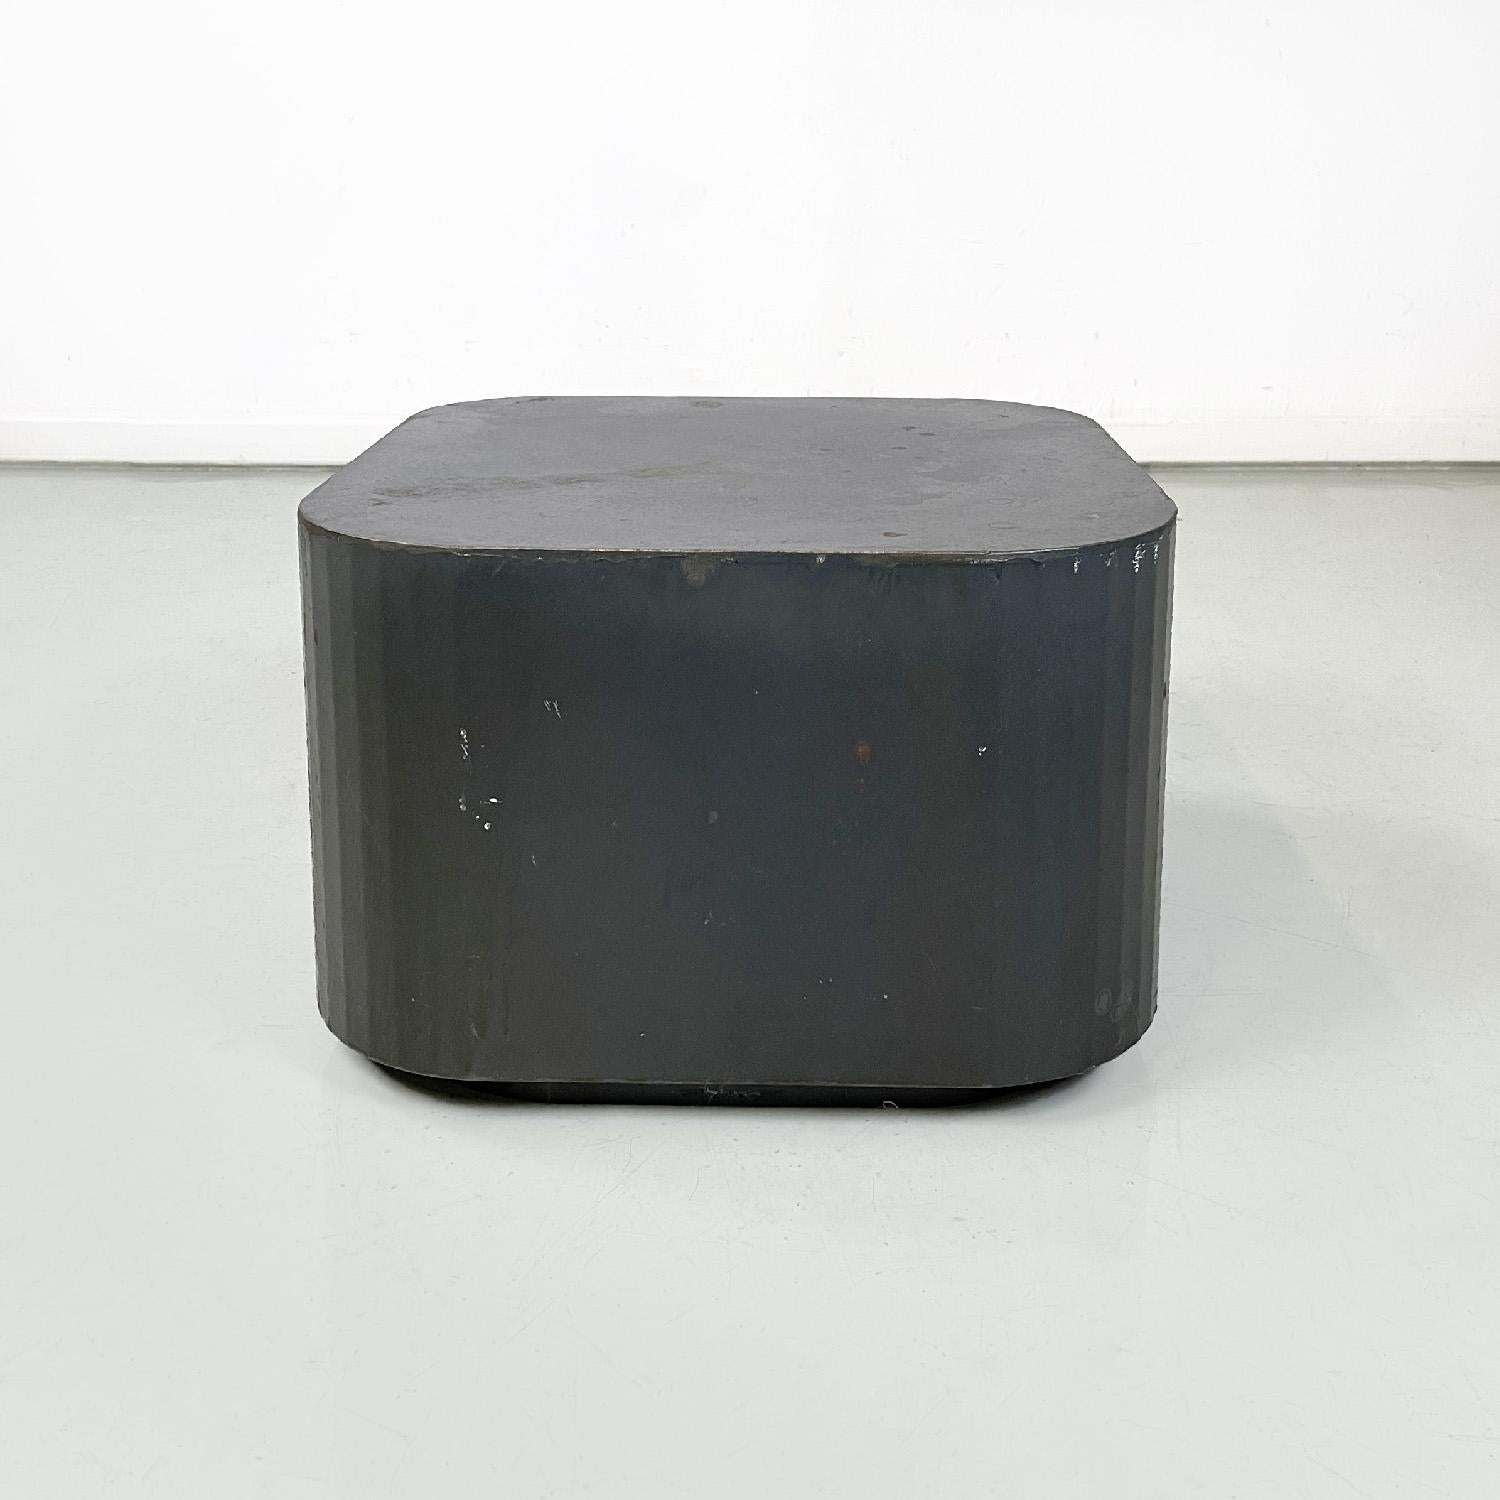 Table basse ou piédestal italien post-moderne quadrillé en acier bruni, années 2000
Table basse ou piédestal en acier bruni avec base carrée. Les angles sont arrondis et la base est légèrement plus petite que la structure principale. Peut également